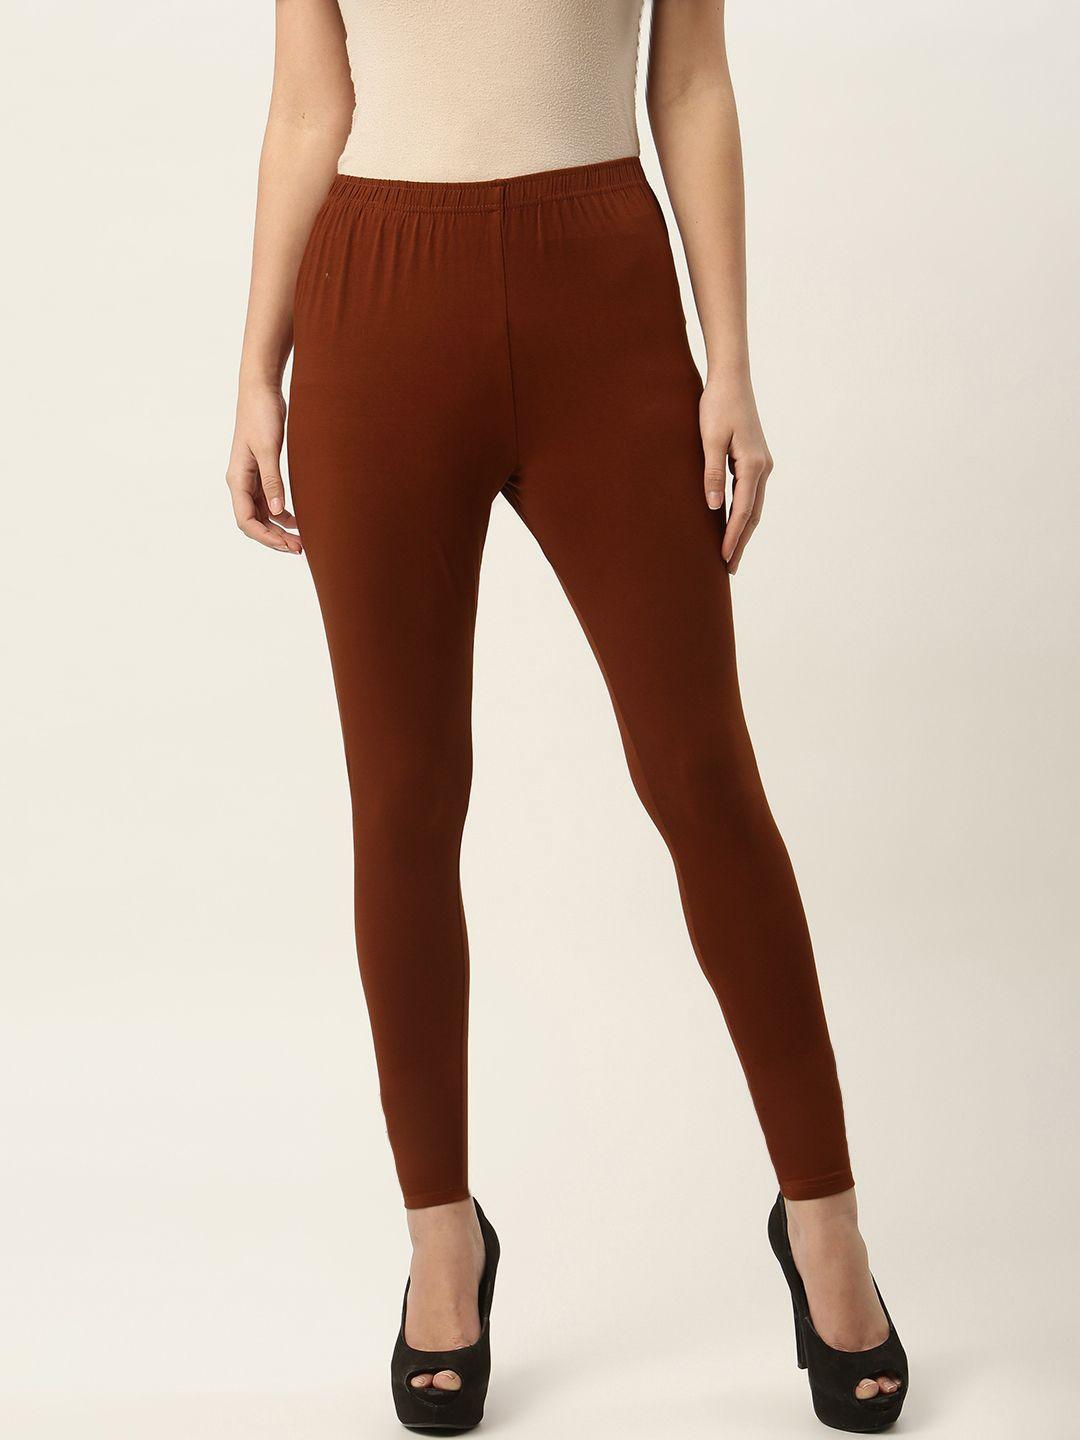 ms.lingies women maroon solid ankle-length leggings